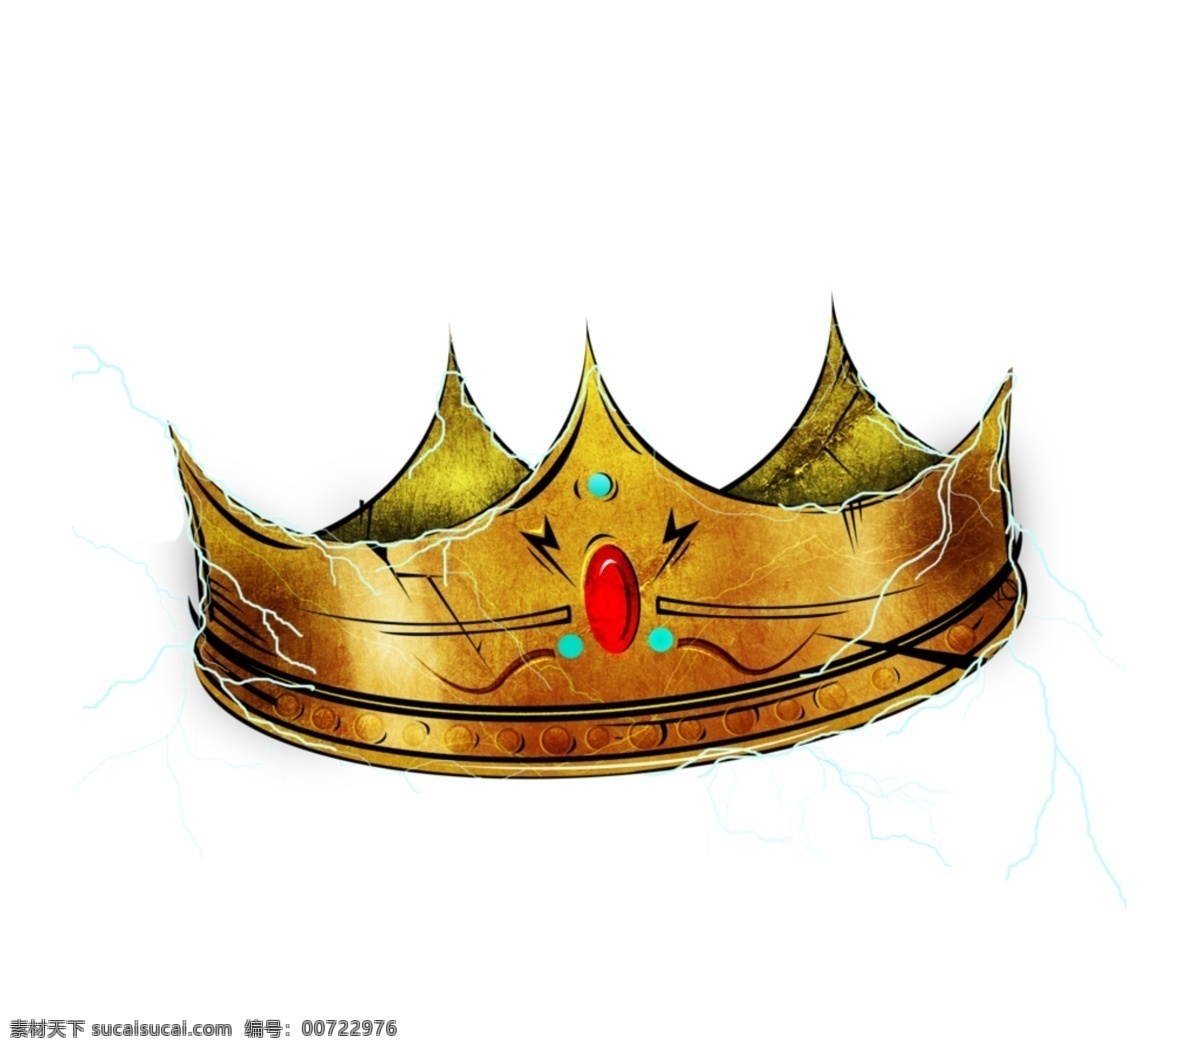 镶 宝石 皇冠 免 抠 透明 镶宝石的皇冠 元素 图形 皇冠海报图片 皇冠广告素材 皇冠海报图